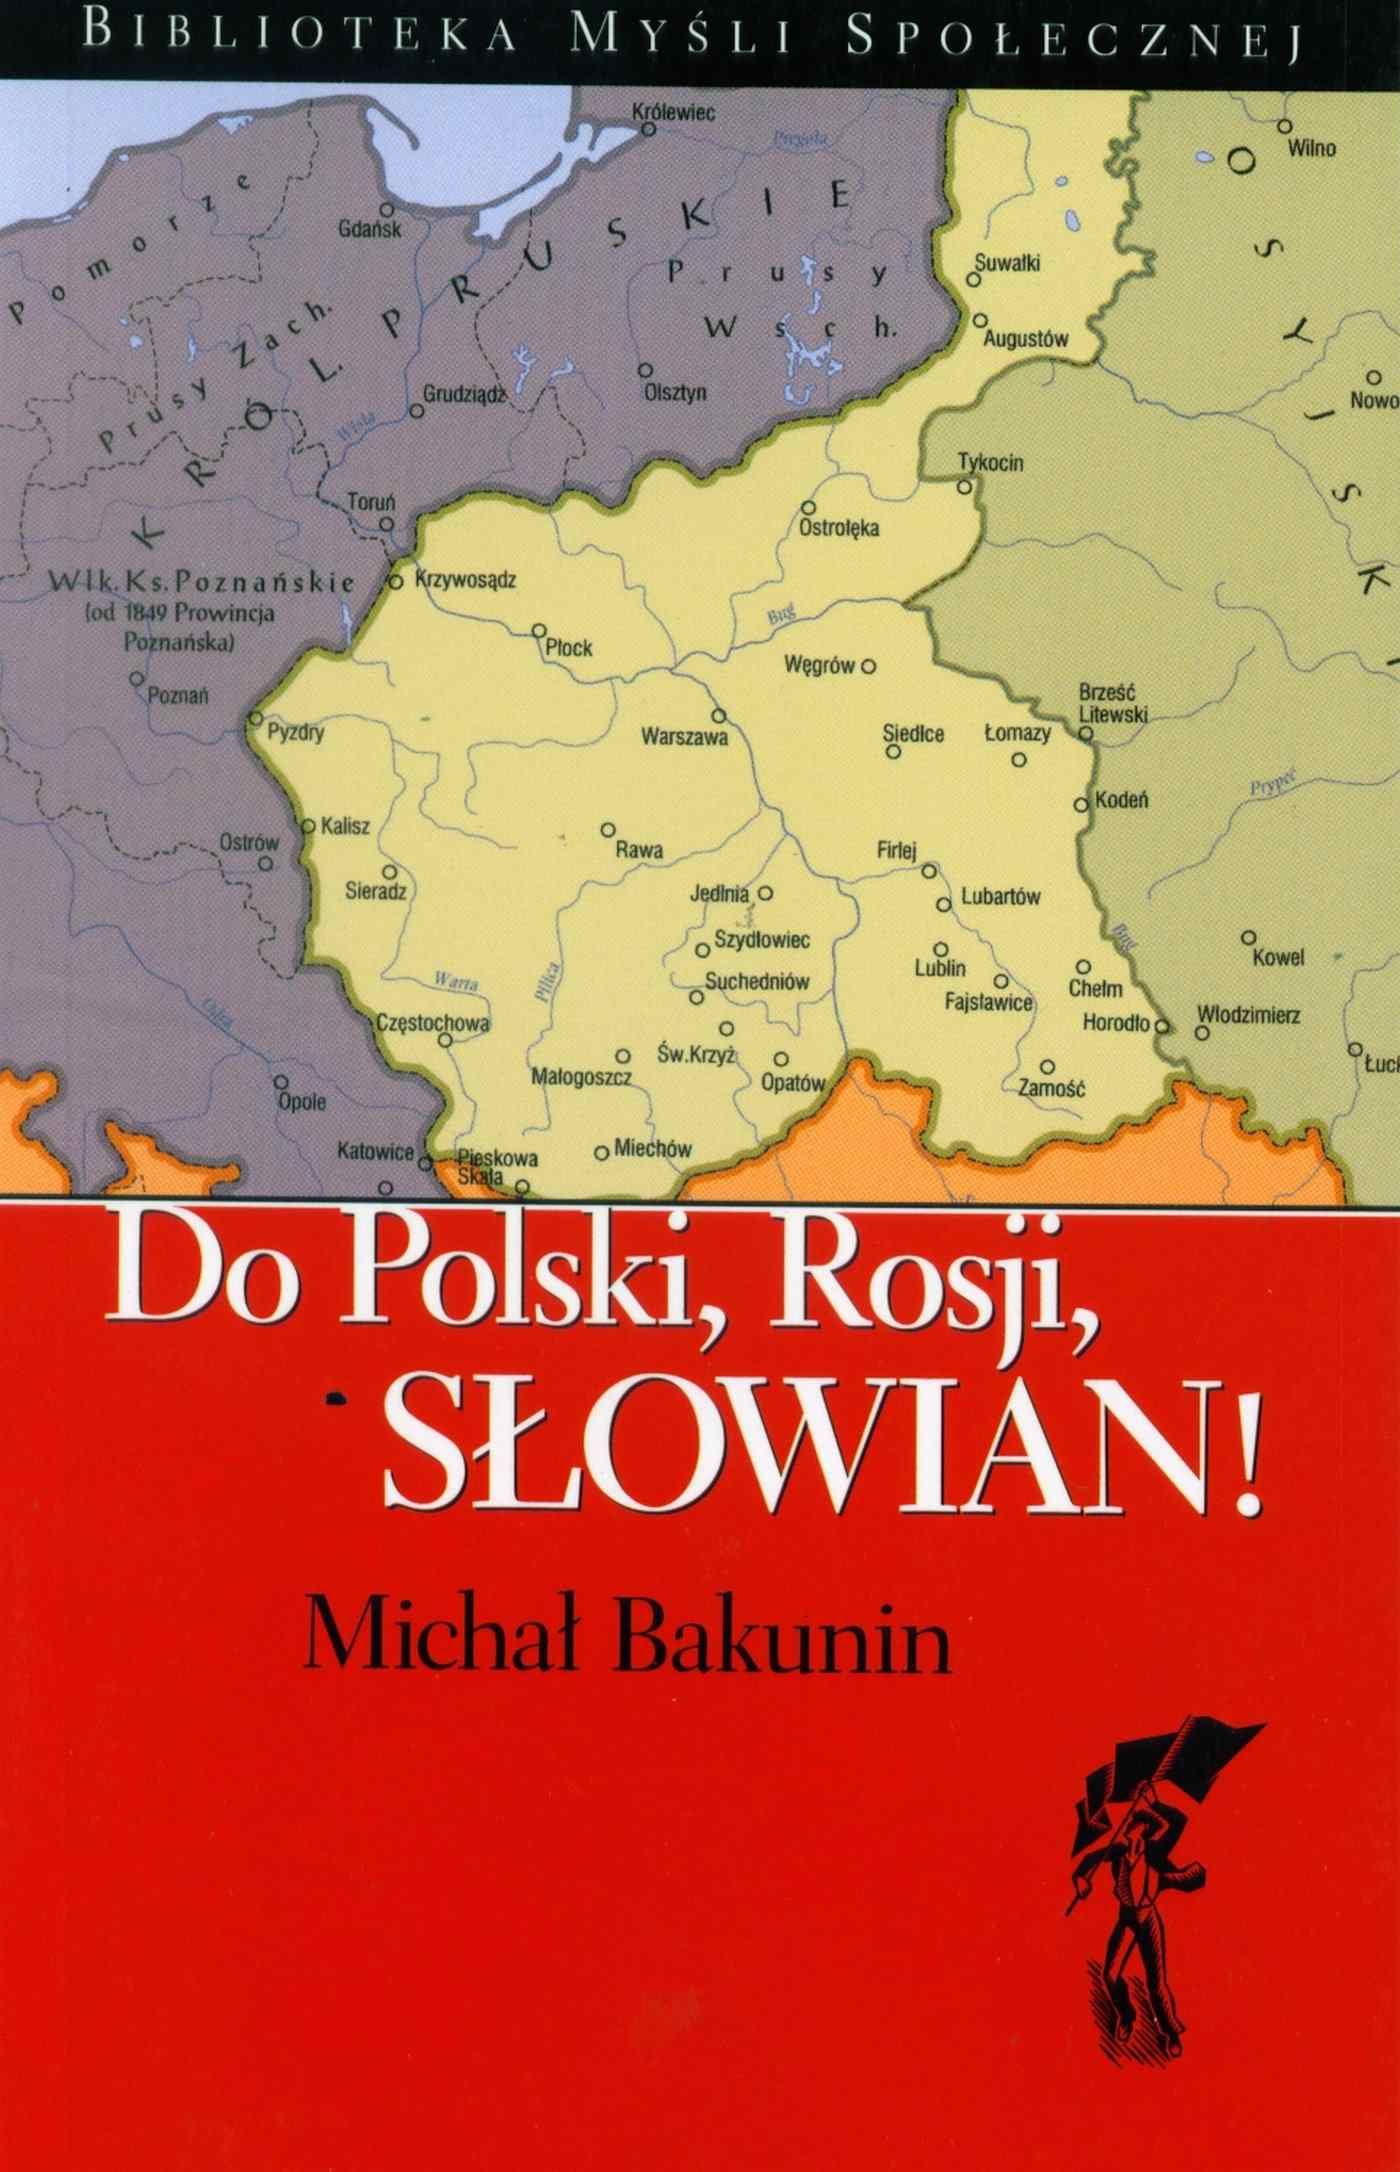 Okładka:Do Polski, Rosji, Słowian! 